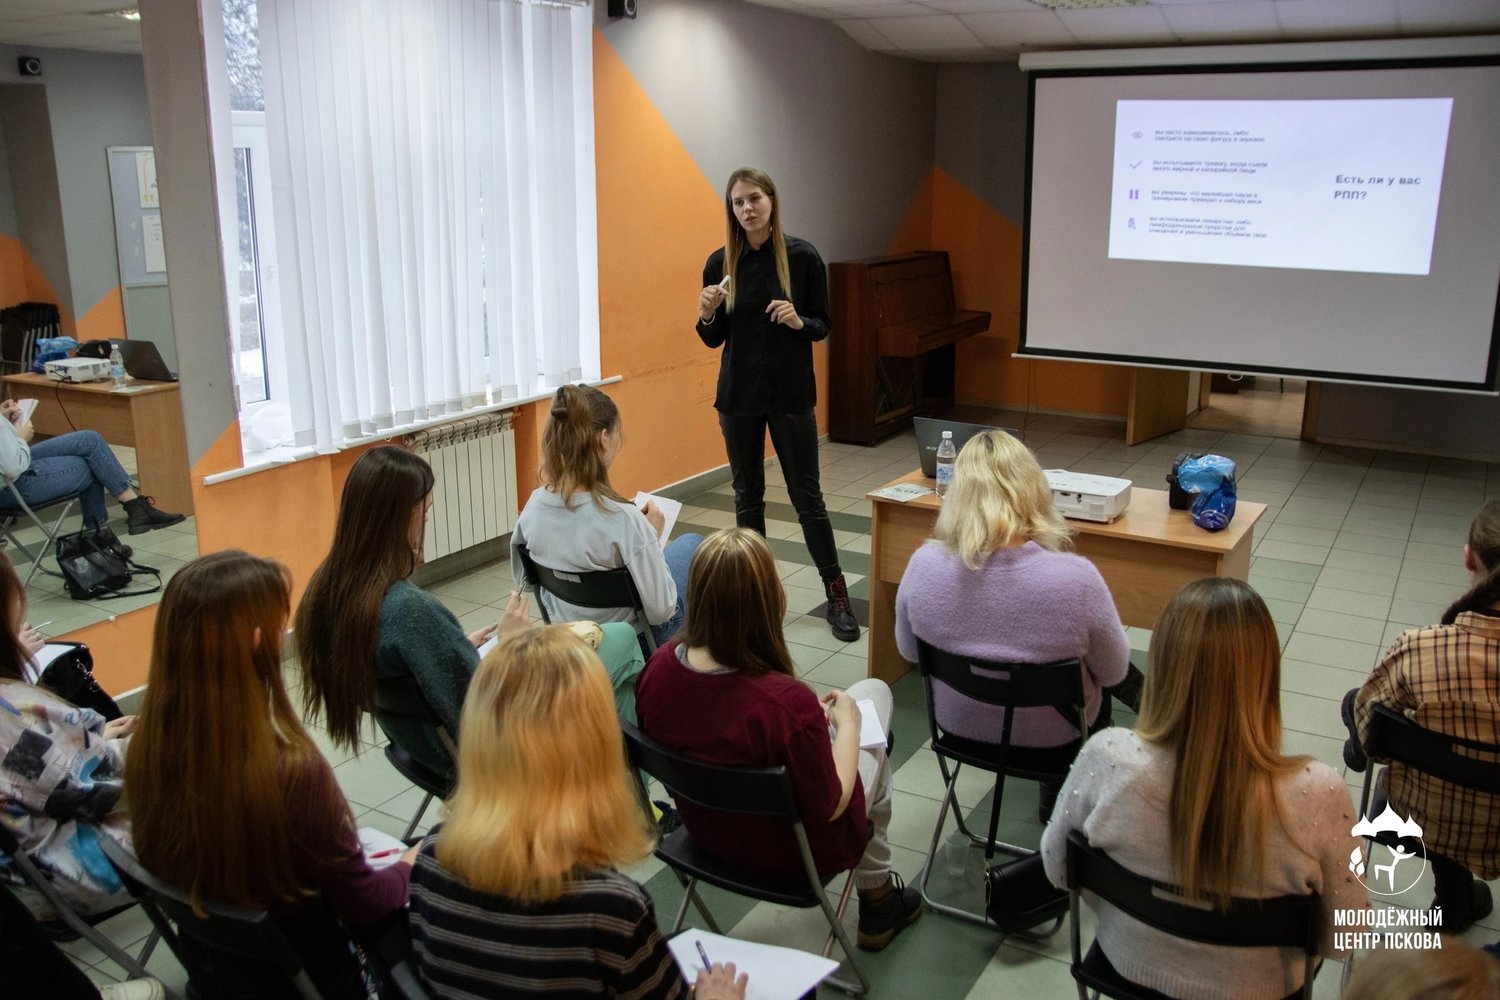 С 15 по 20 апреля Псковский городской молодёжный центр приглашает молодёжь принять участие в мероприятии «Марафон здоровых привычек».